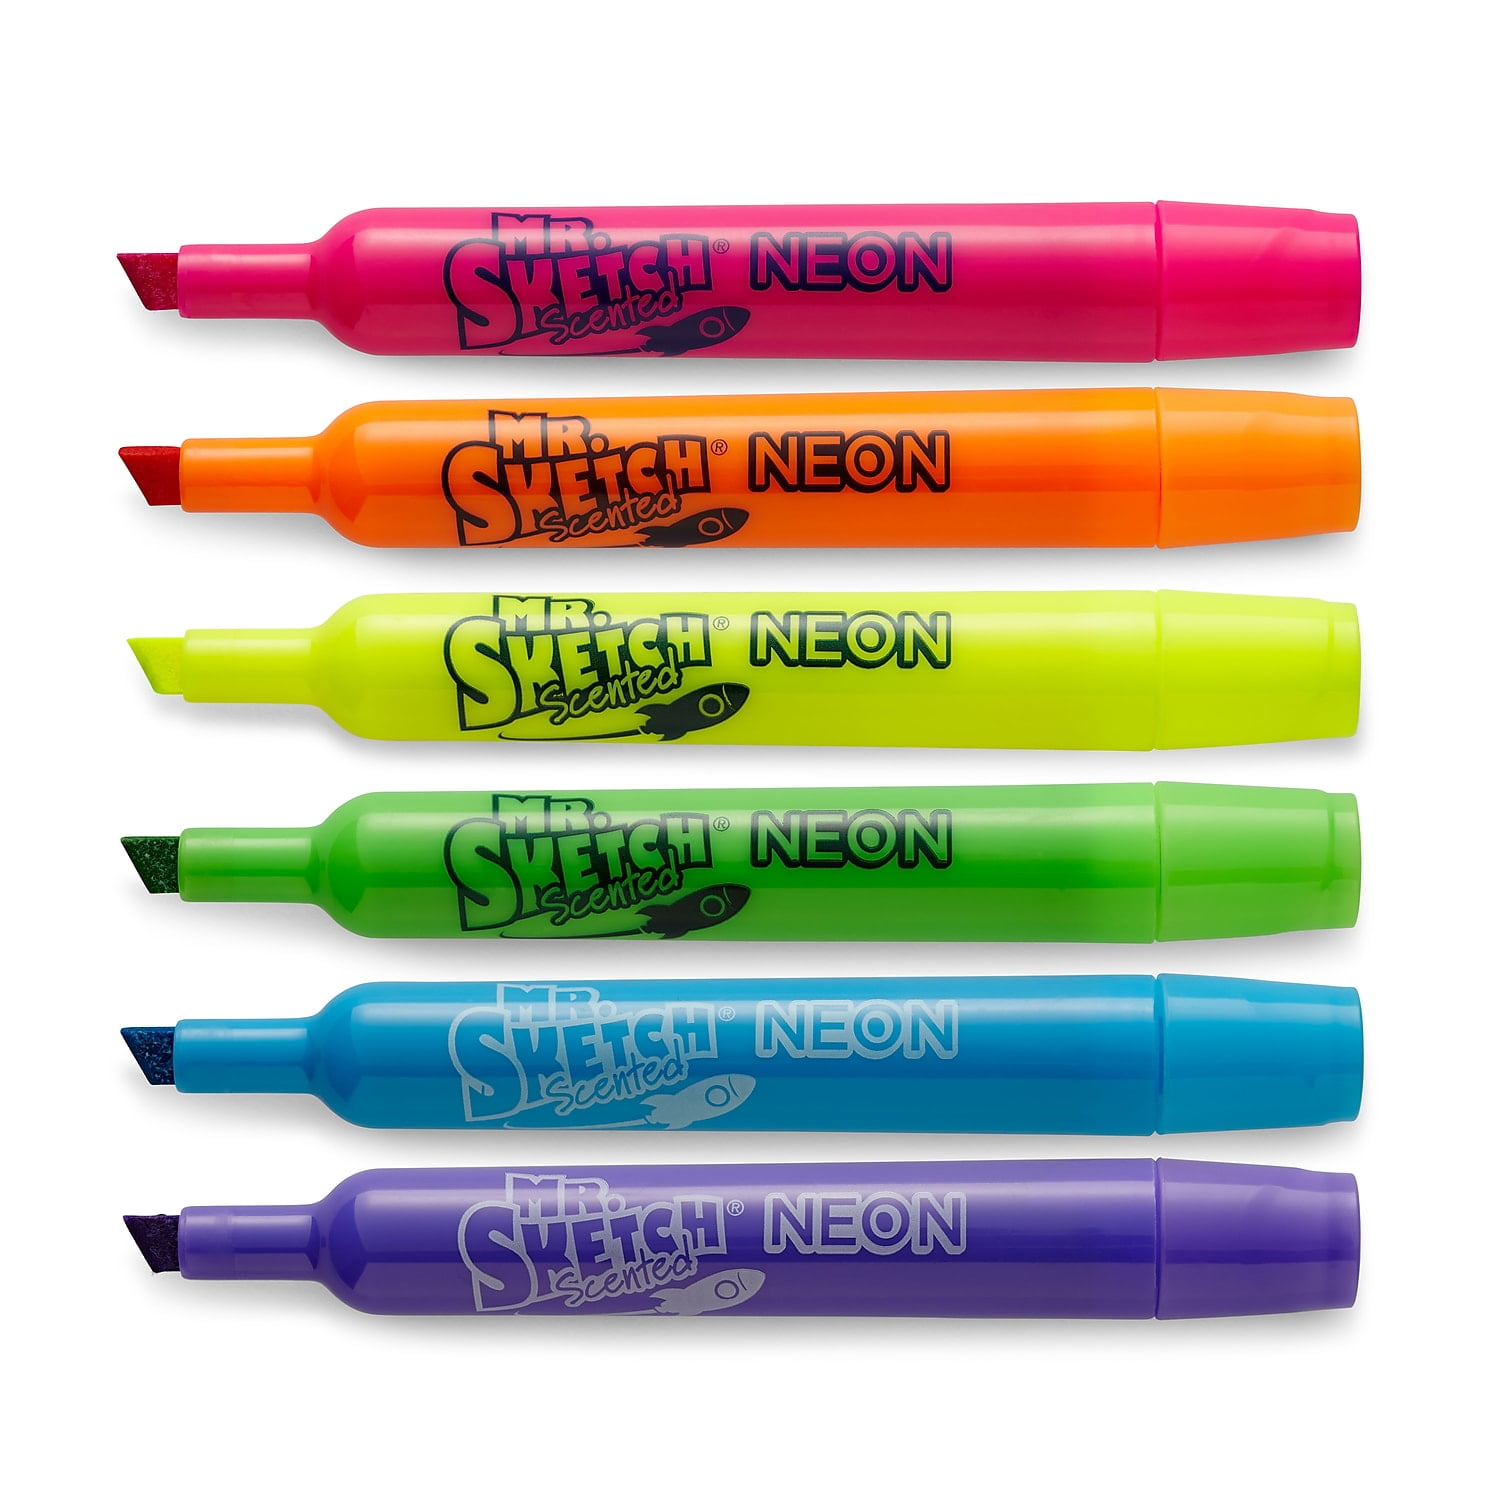 Mr. Sketch® Scented Washable Chisel Marker Sets, 10-Color 